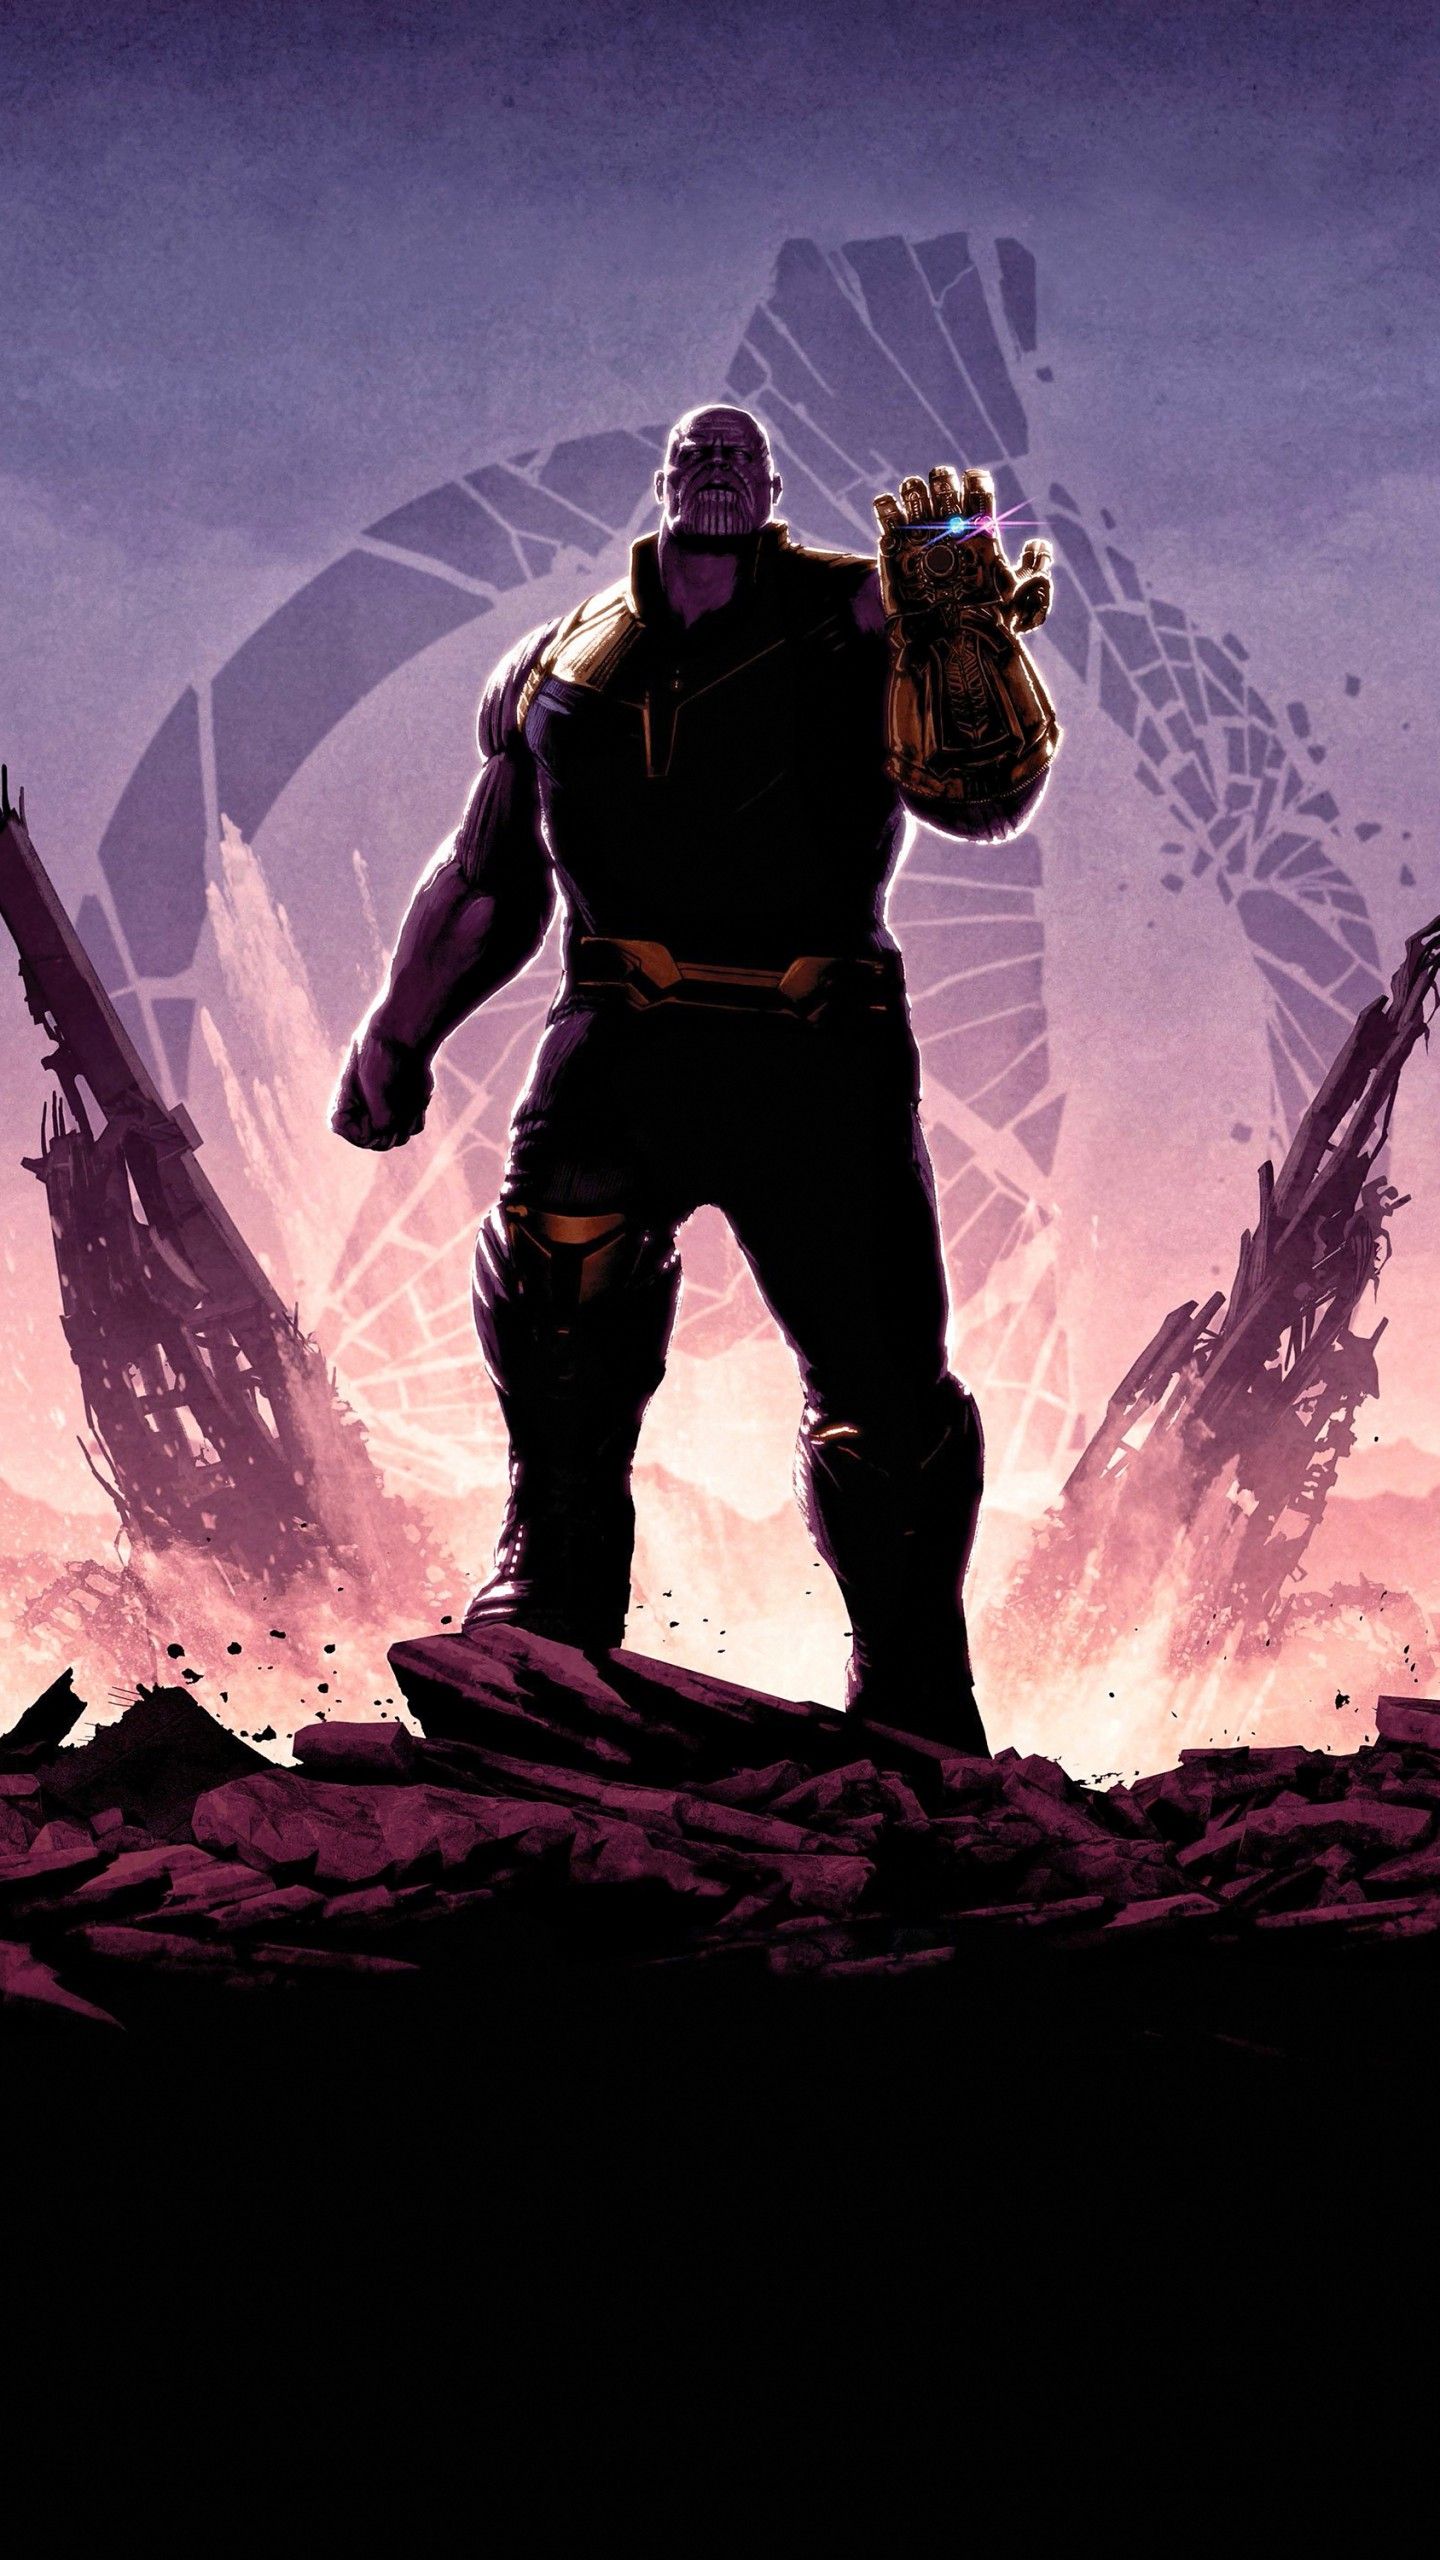 Avengers: Endgame 4K Wallpaper, Avengers: Infinity War, Thanos, Marvel Superheroes, Dark, 5K, 8K, Movies